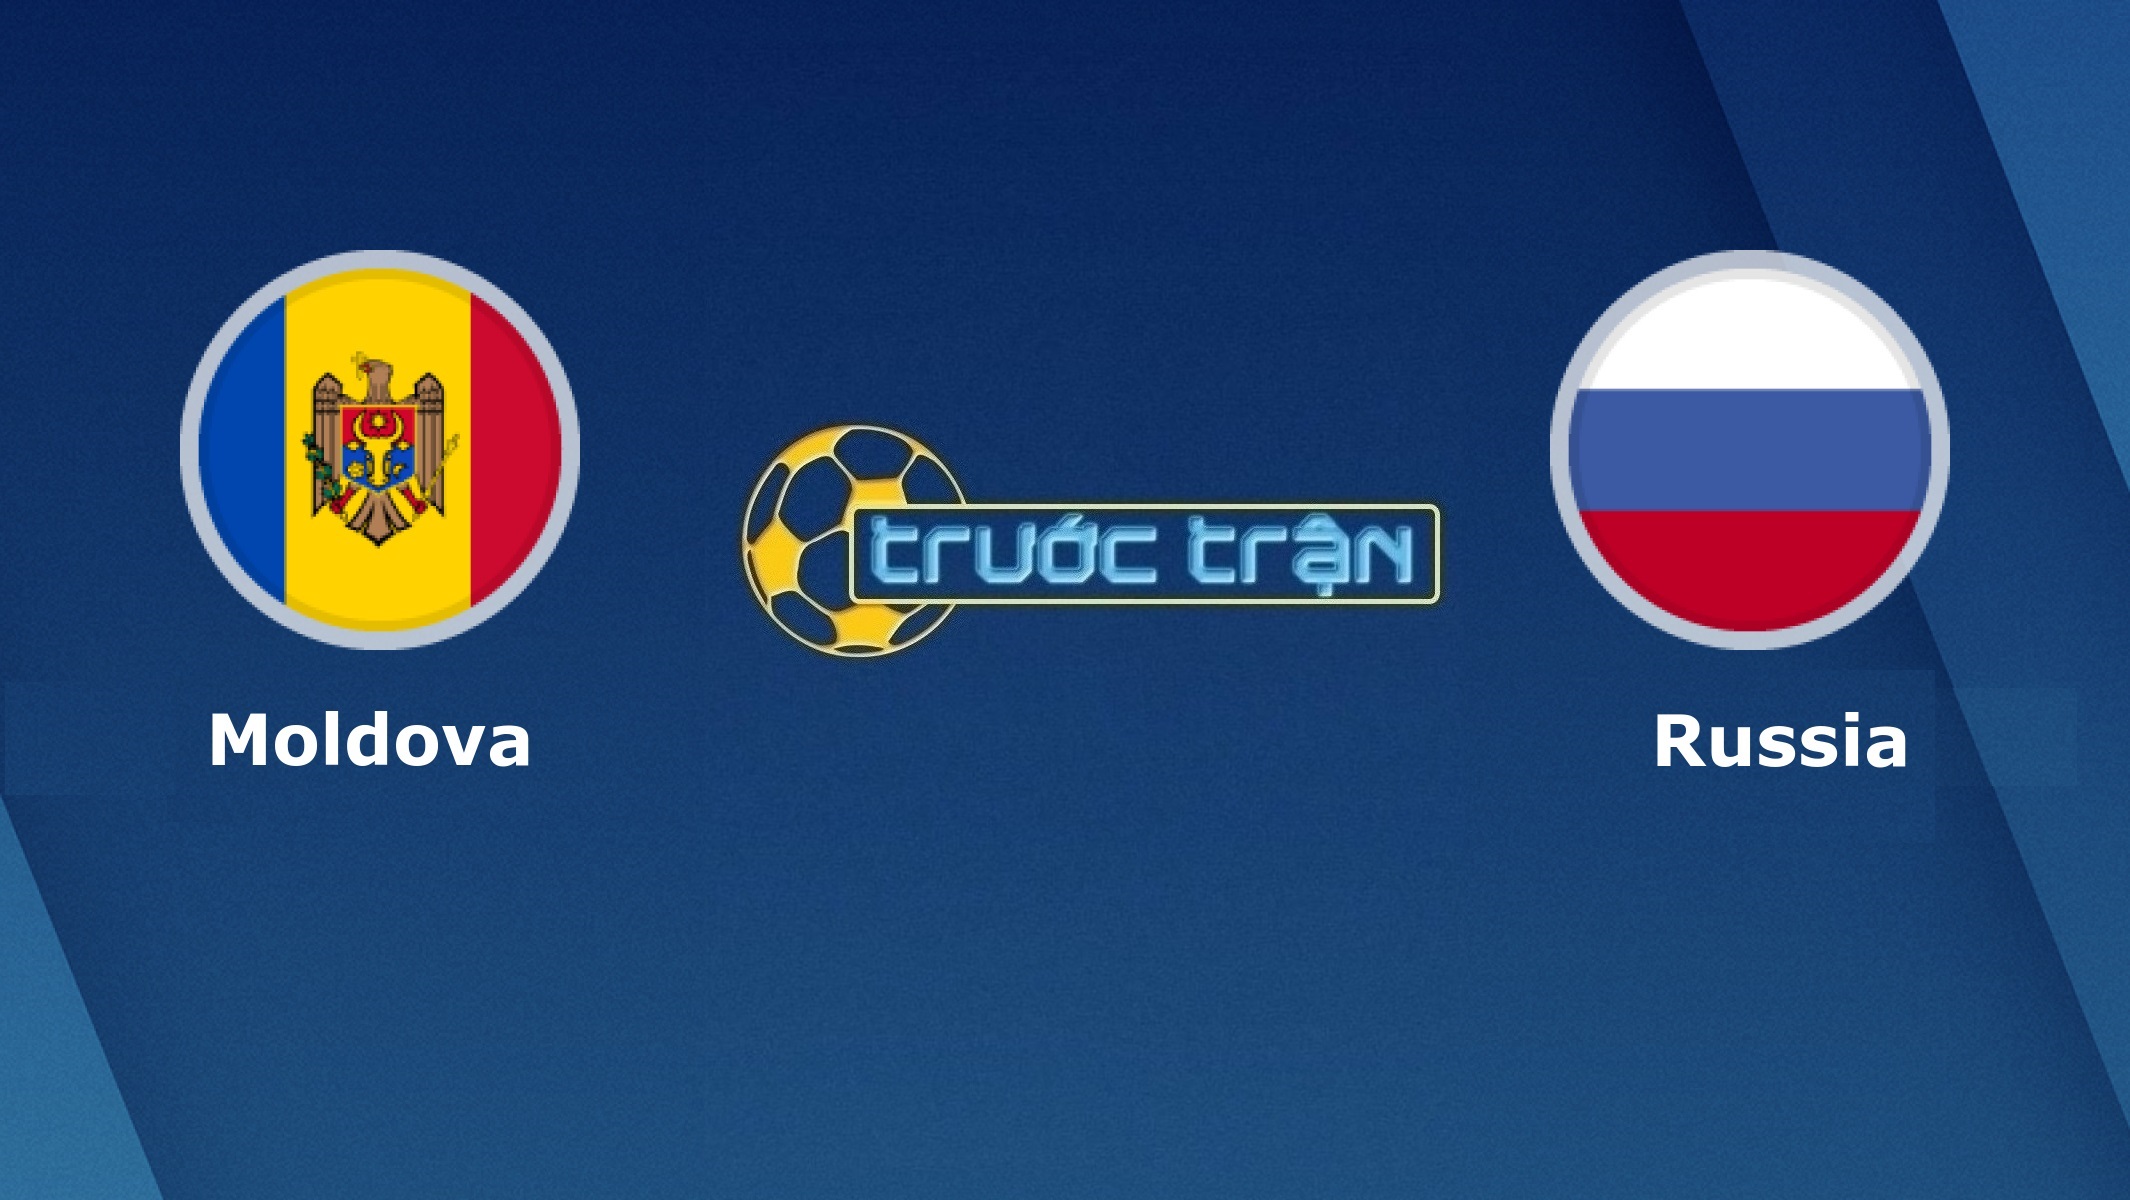 Moldova vs Nga – Tip kèo bóng đá hôm nay – 00h00 13/11/2020